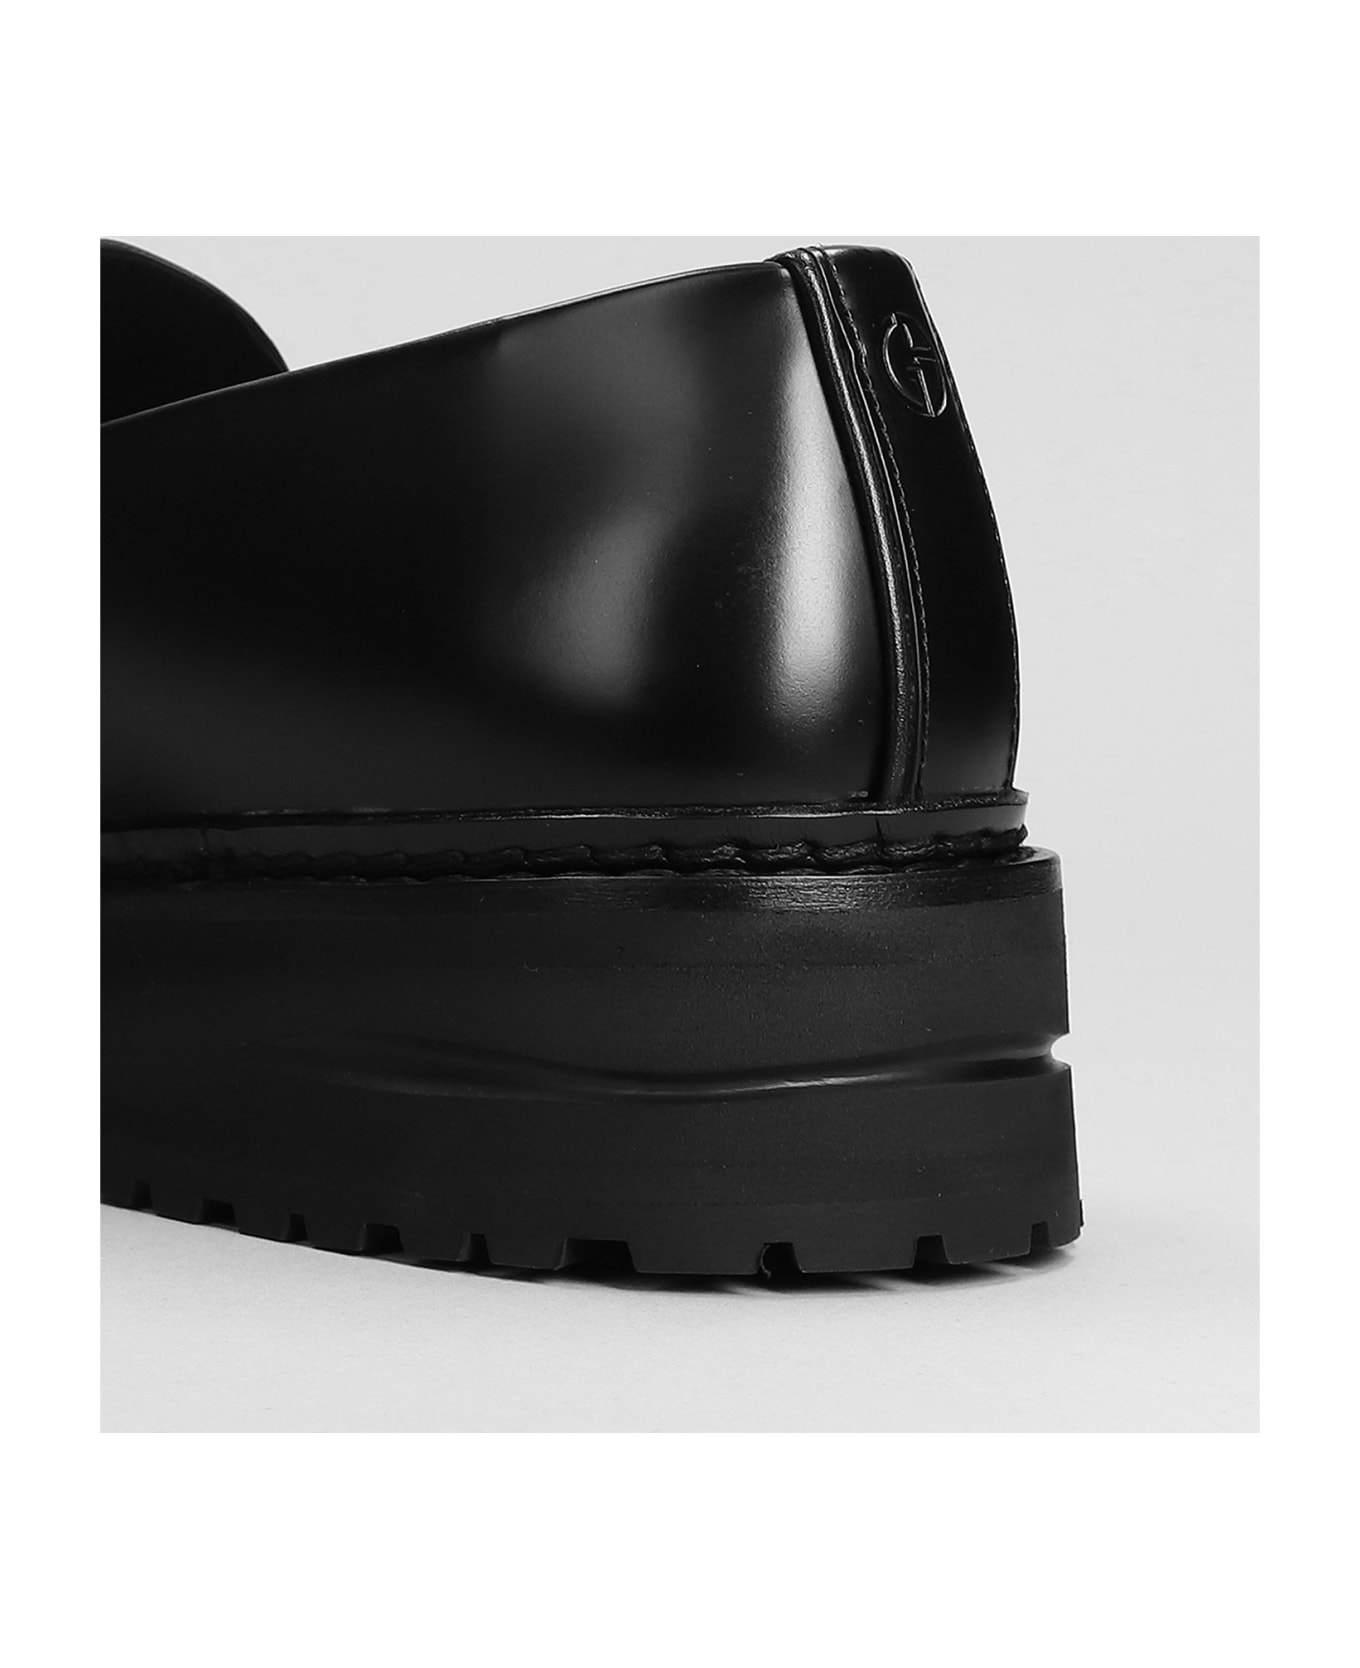 Giorgio Armani Loafers In Black Leather - black